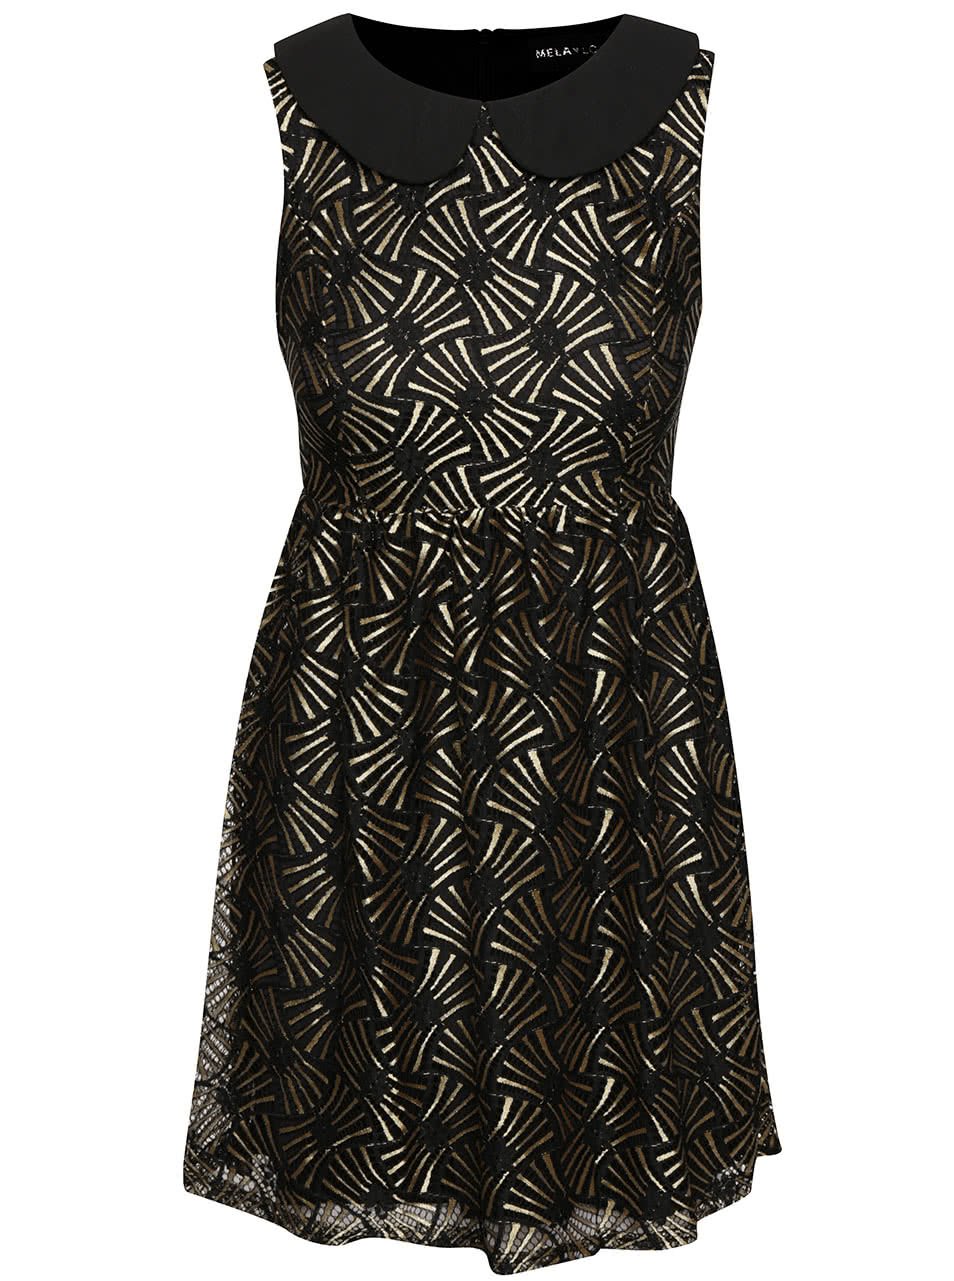 Černé šaty s límečkem a vzory ve zlaté barvě Mela London